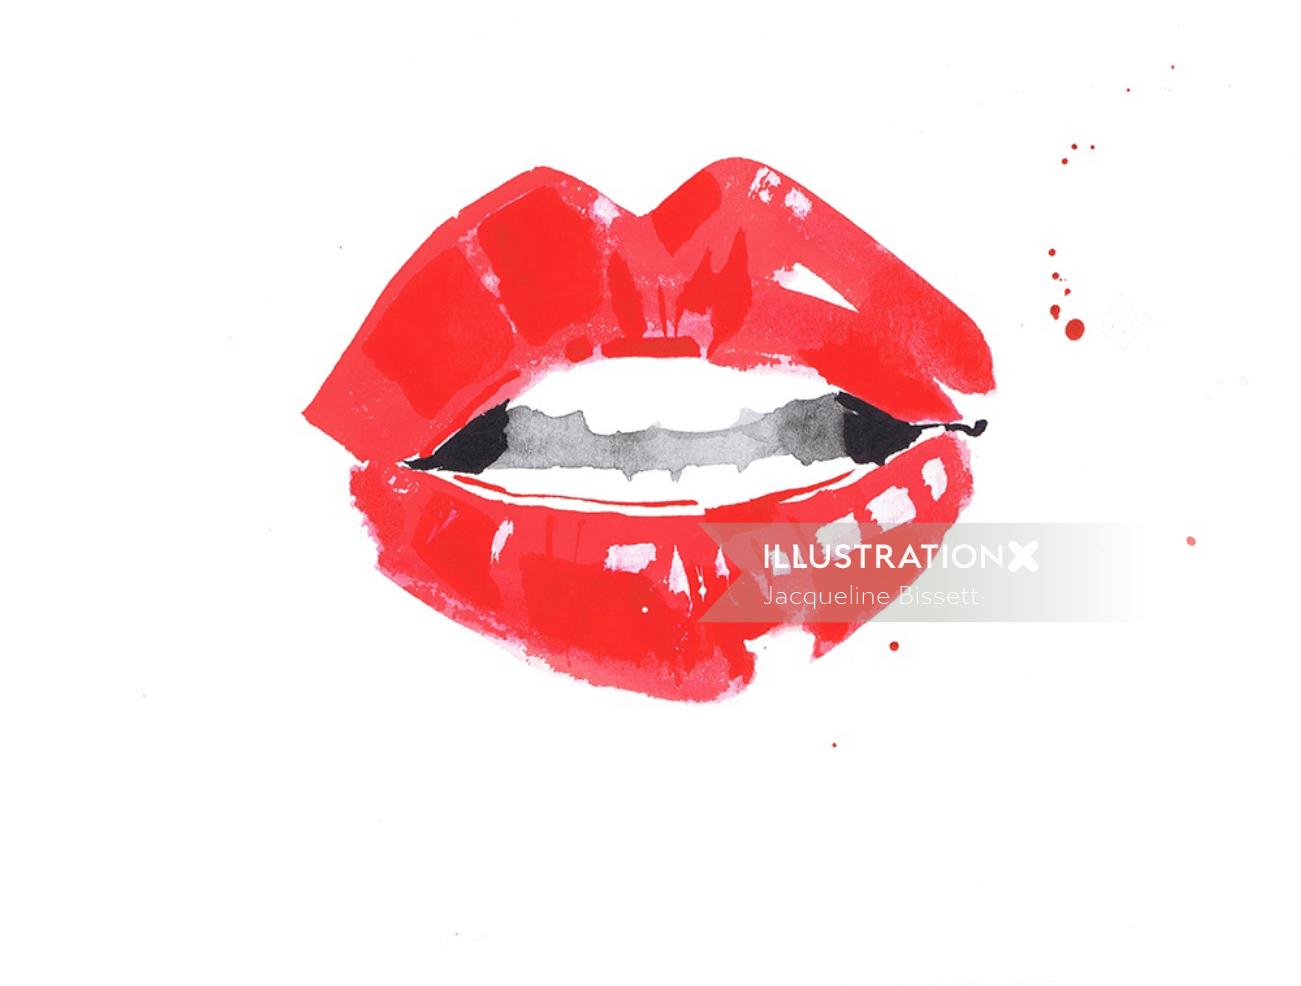 Ilustração de lábios vermelhos